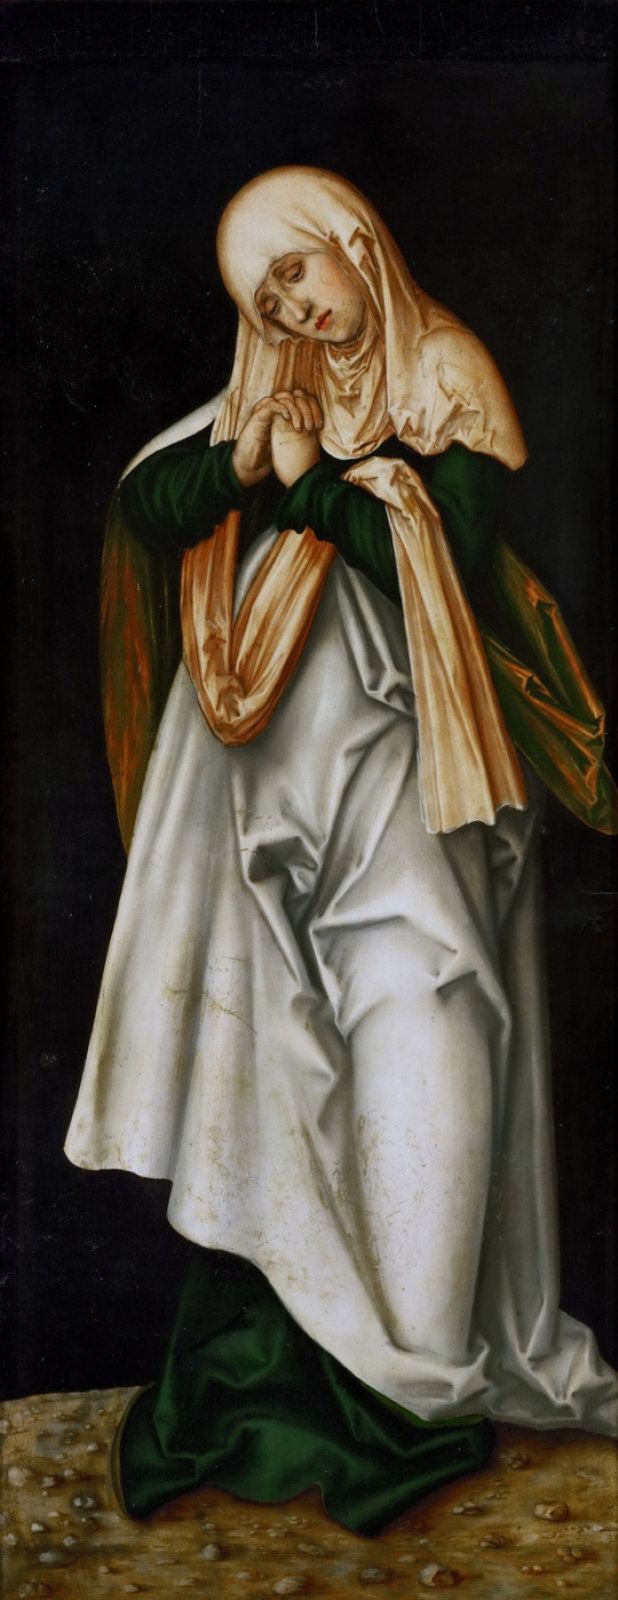 Lucas Cranach the Elder. Das Haus Madonna (Flügel eines Altars)